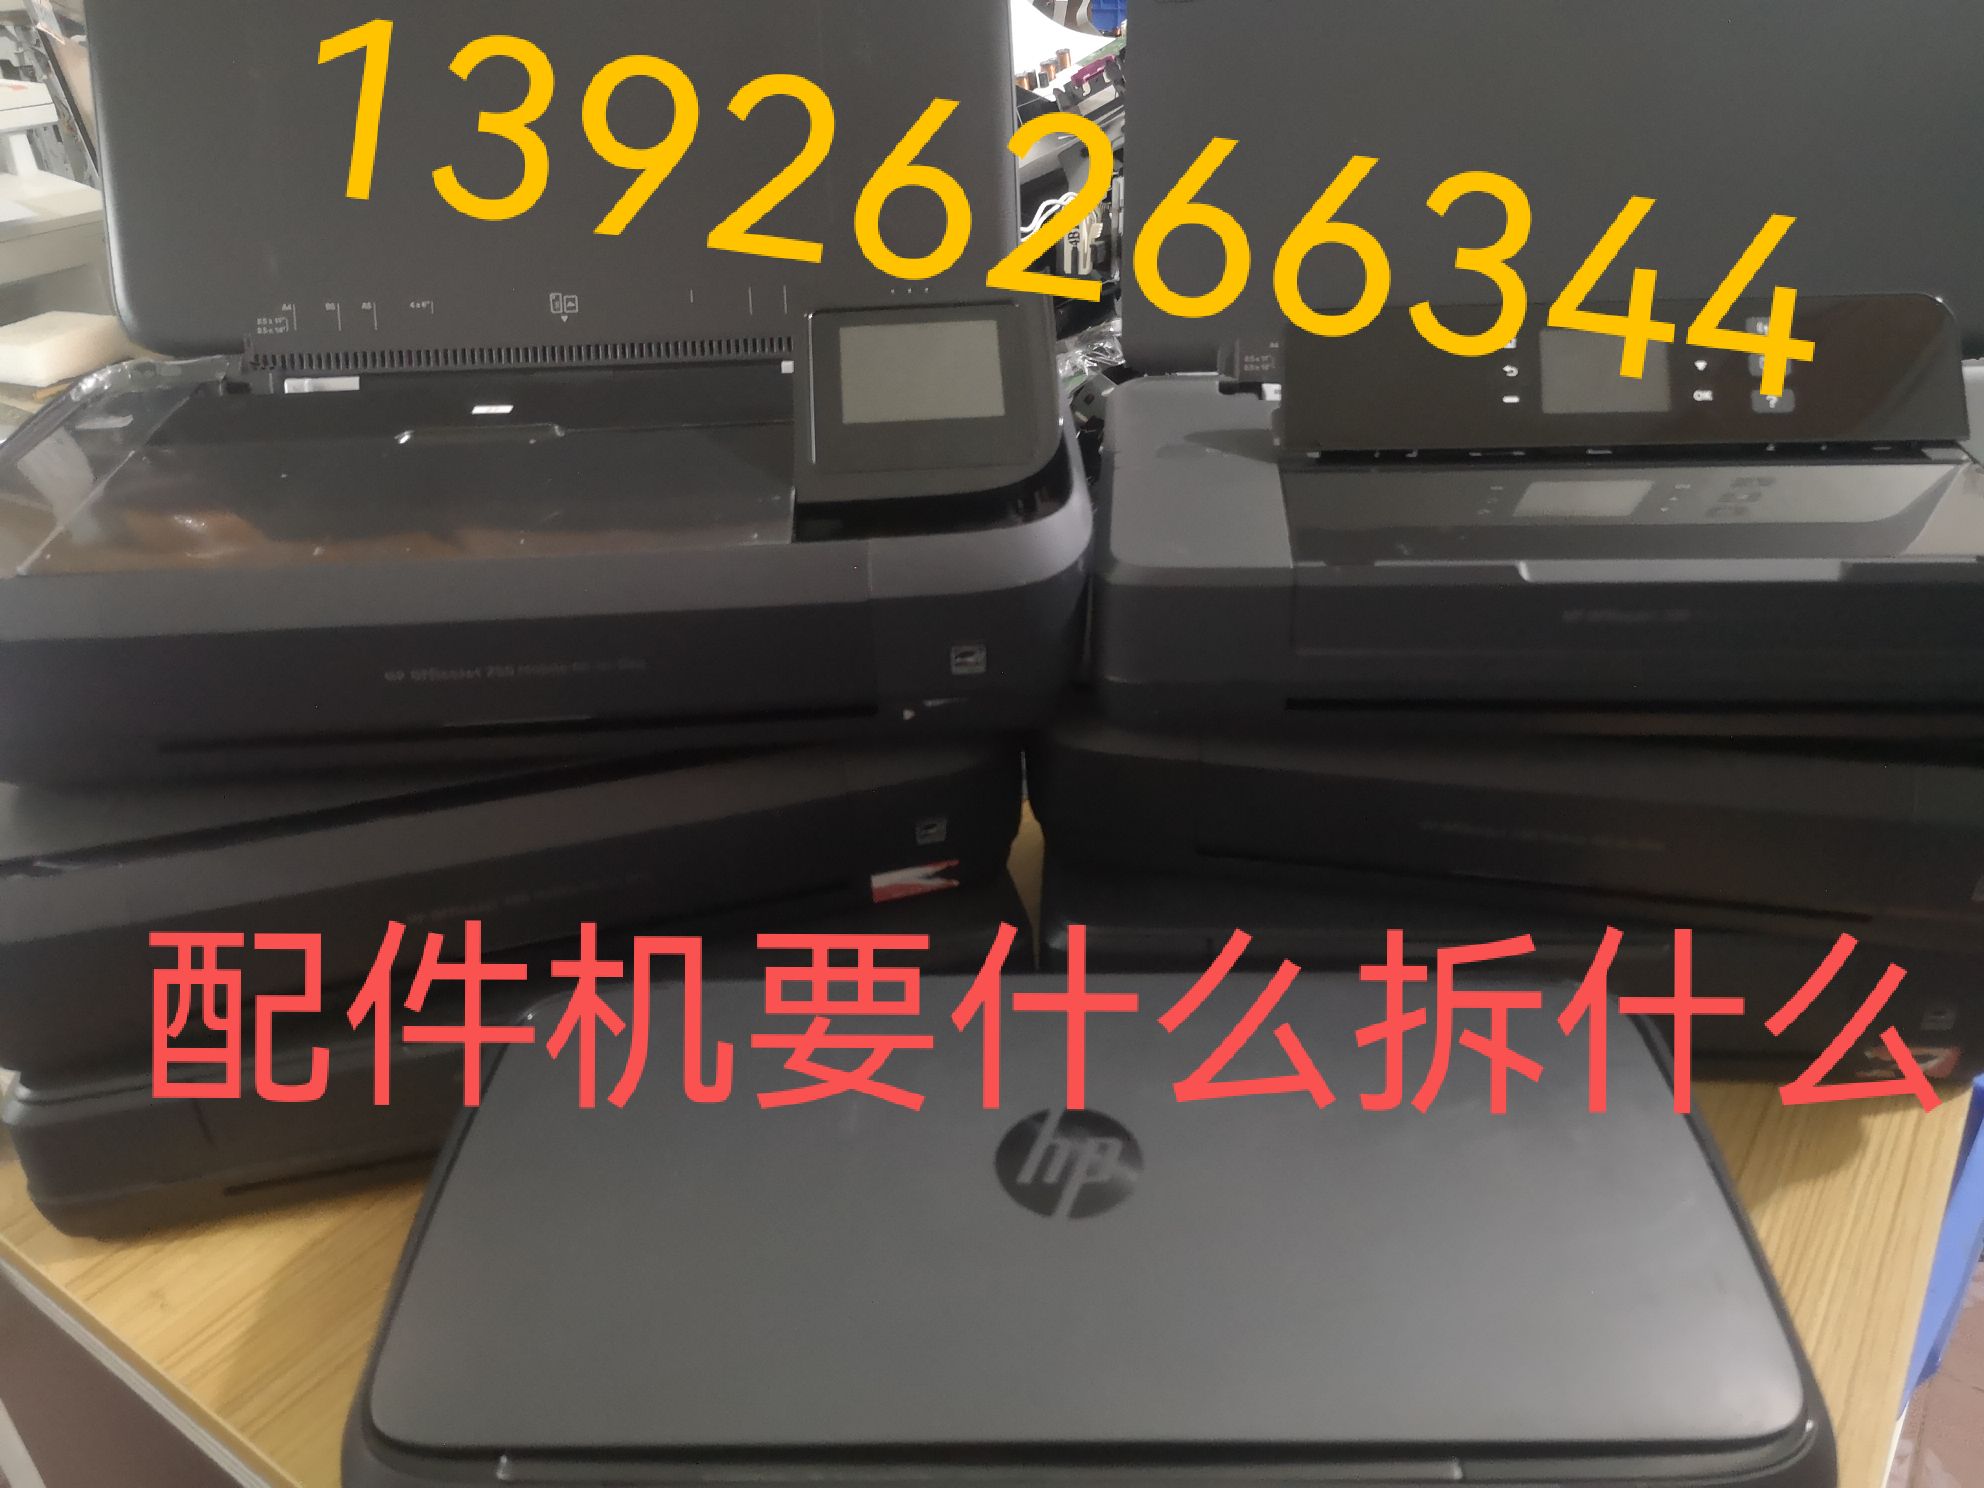 惠普HP OfficeJet200 258便携式打印机 配件进纸